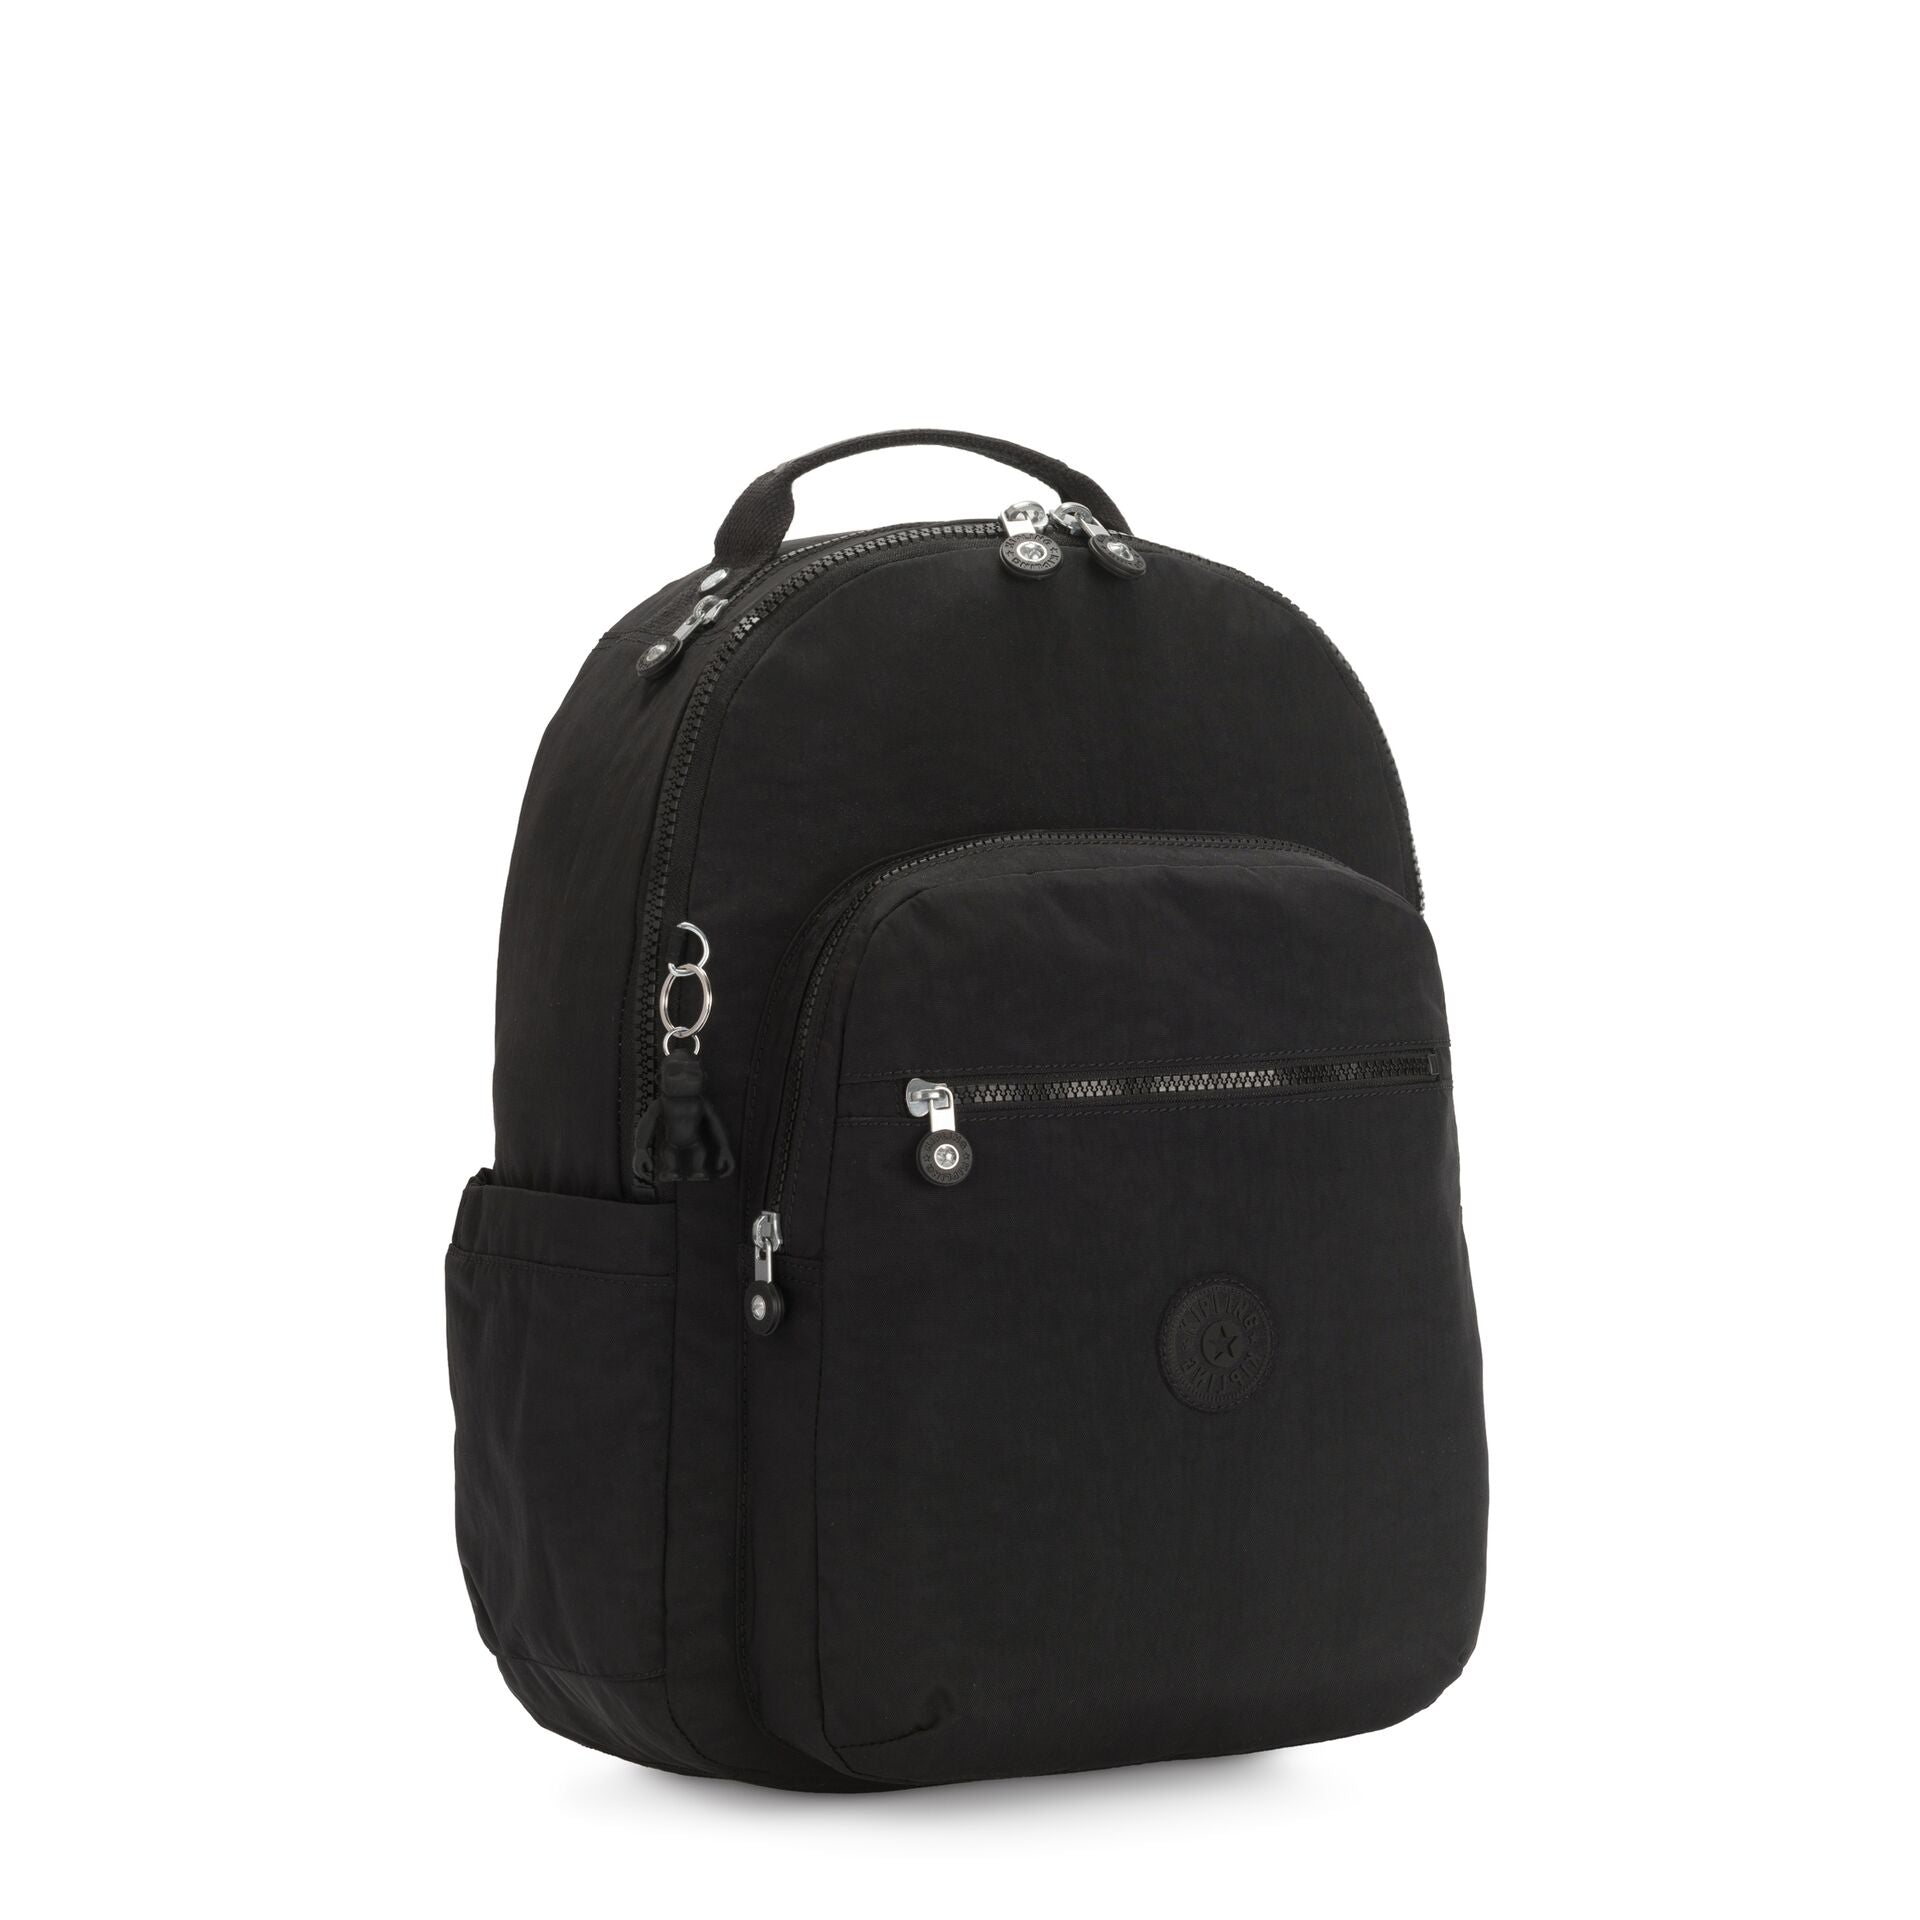 KIPLING-SEOUL-Large Backpack-Black Noir-I5210-P39